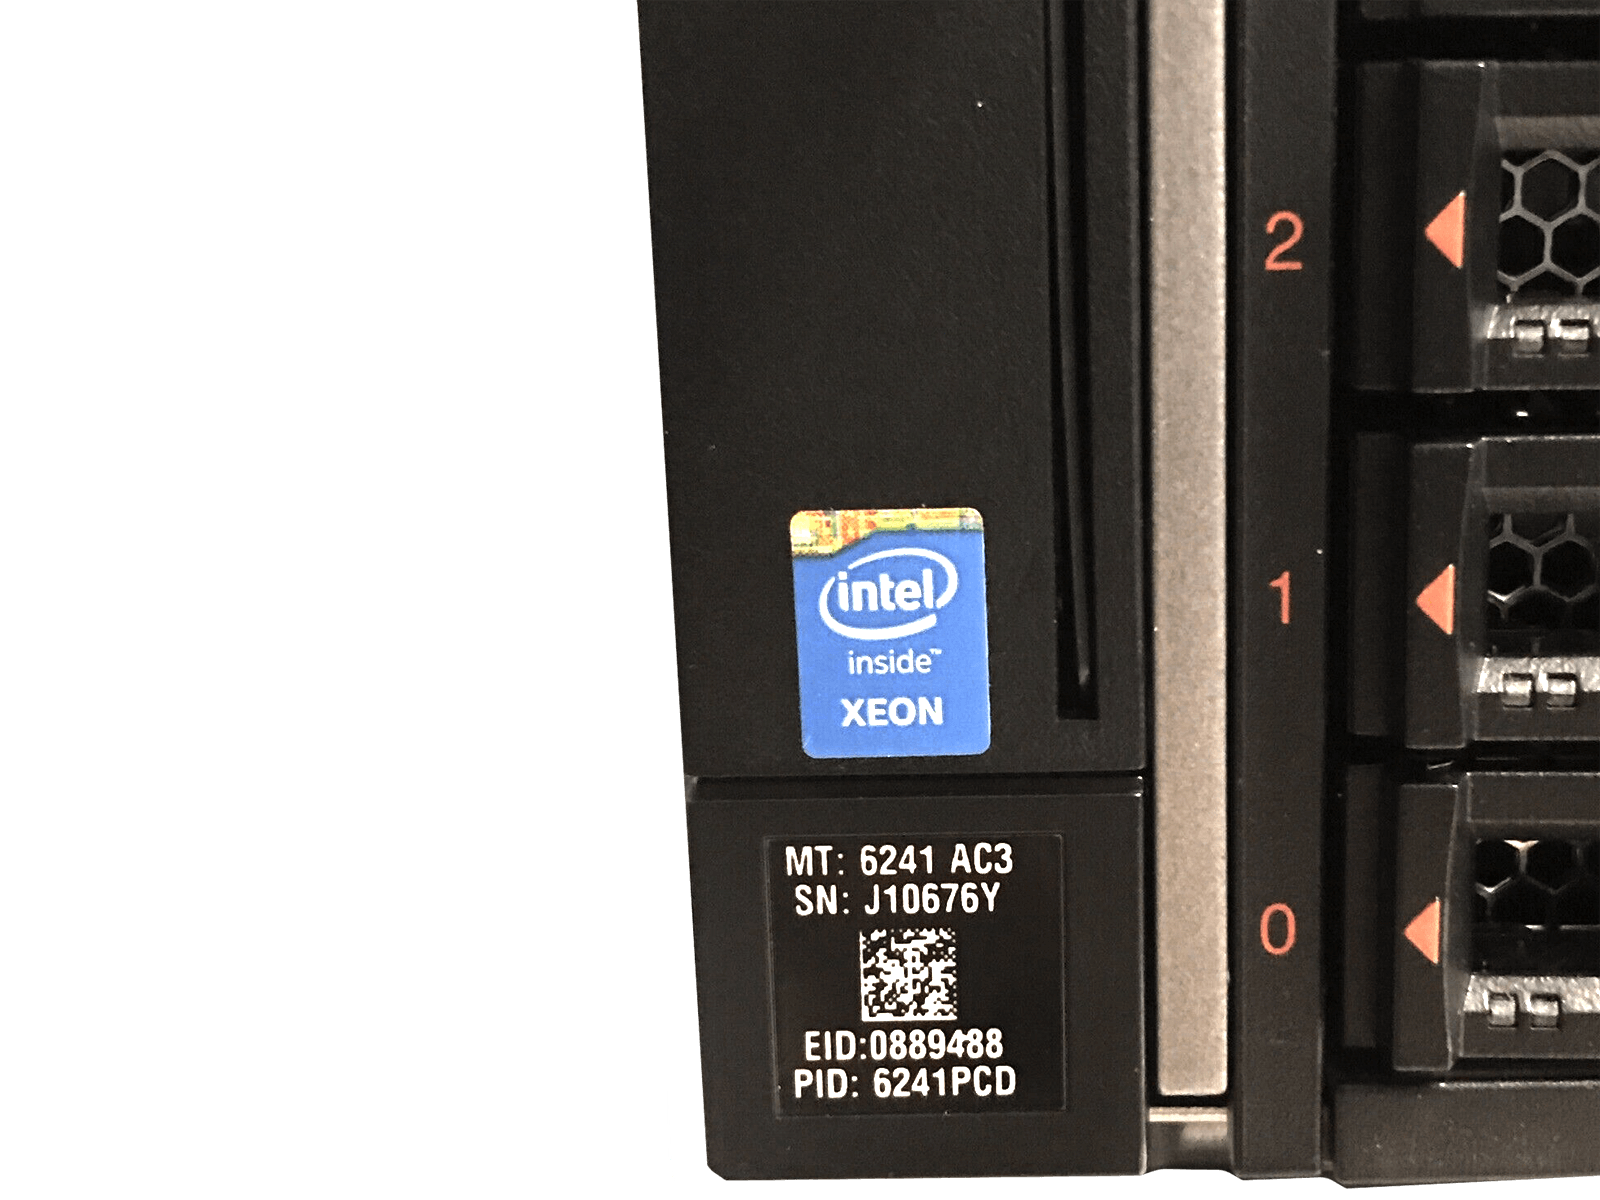 IBM x3850 X6 Server 4x Xeon E7-8870 v4 1536GB DDR4 RAM 3x 300GB 10K 4x 900W PSU